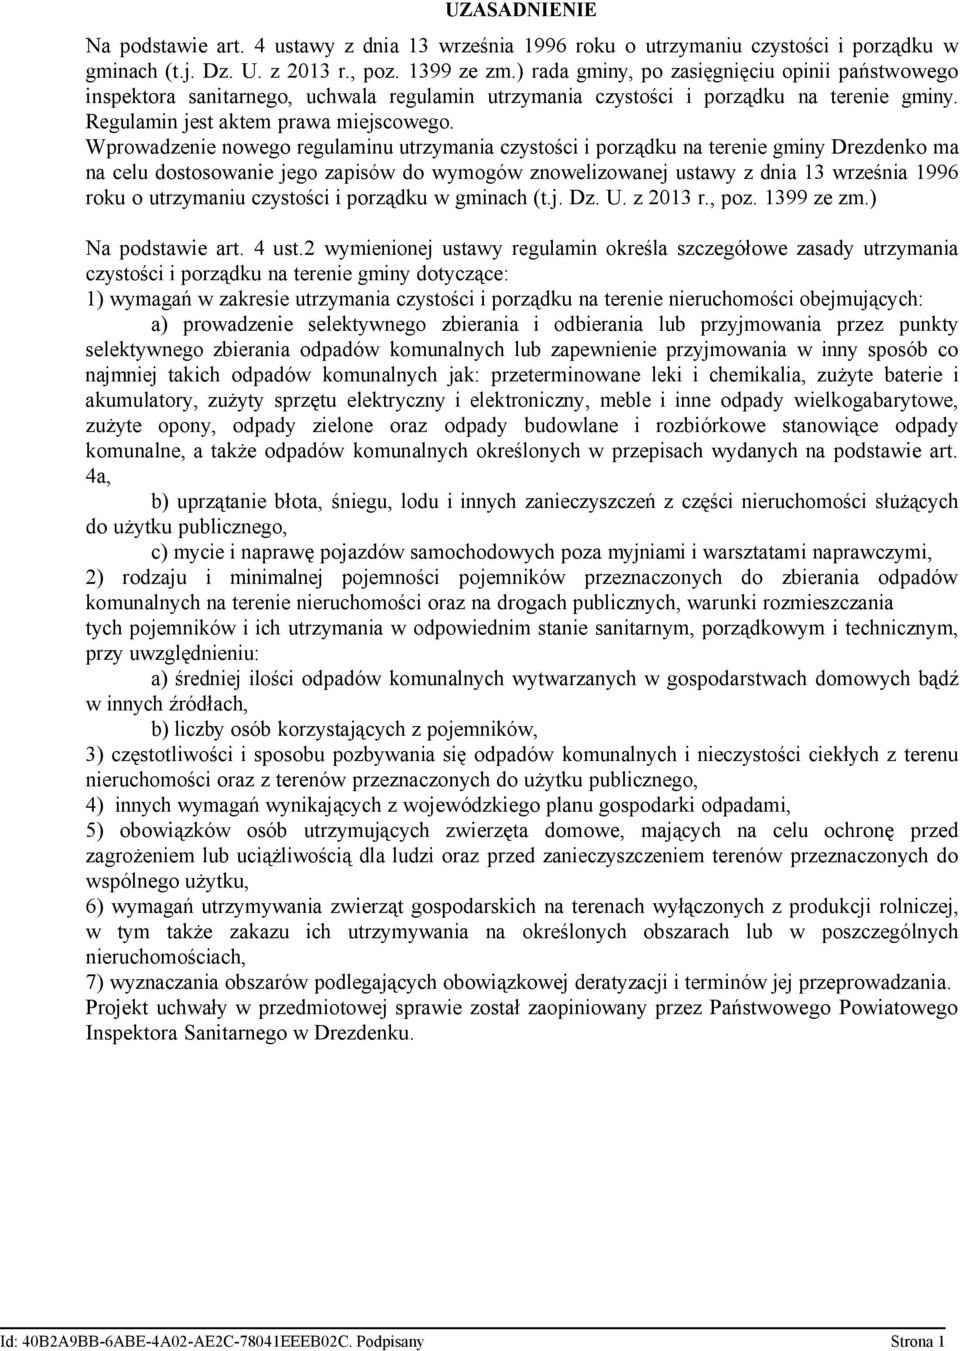 Wprowadzenie nowego regulaminu utrzymania czystości i porządku na terenie gminy Drezdenko ma na celu dostosowanie jego zapisów do wymogów znowelizowanej ustawy z dnia 13 września 1996 roku o